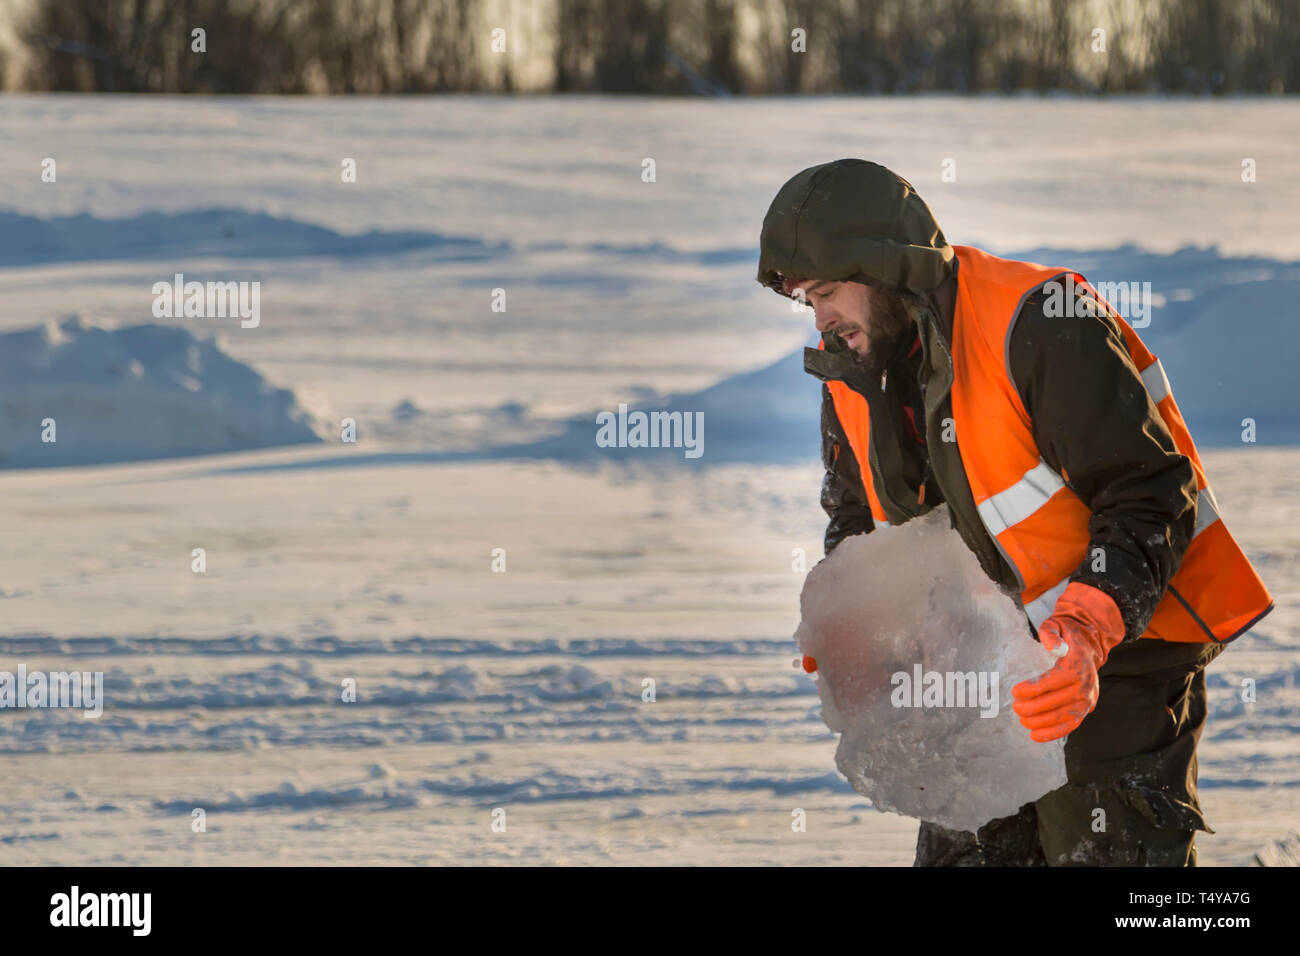 Un trabajador en un chaleco reflectante naranja lleva un bloque de hielo desde el orificio en su mano. Foto de stock